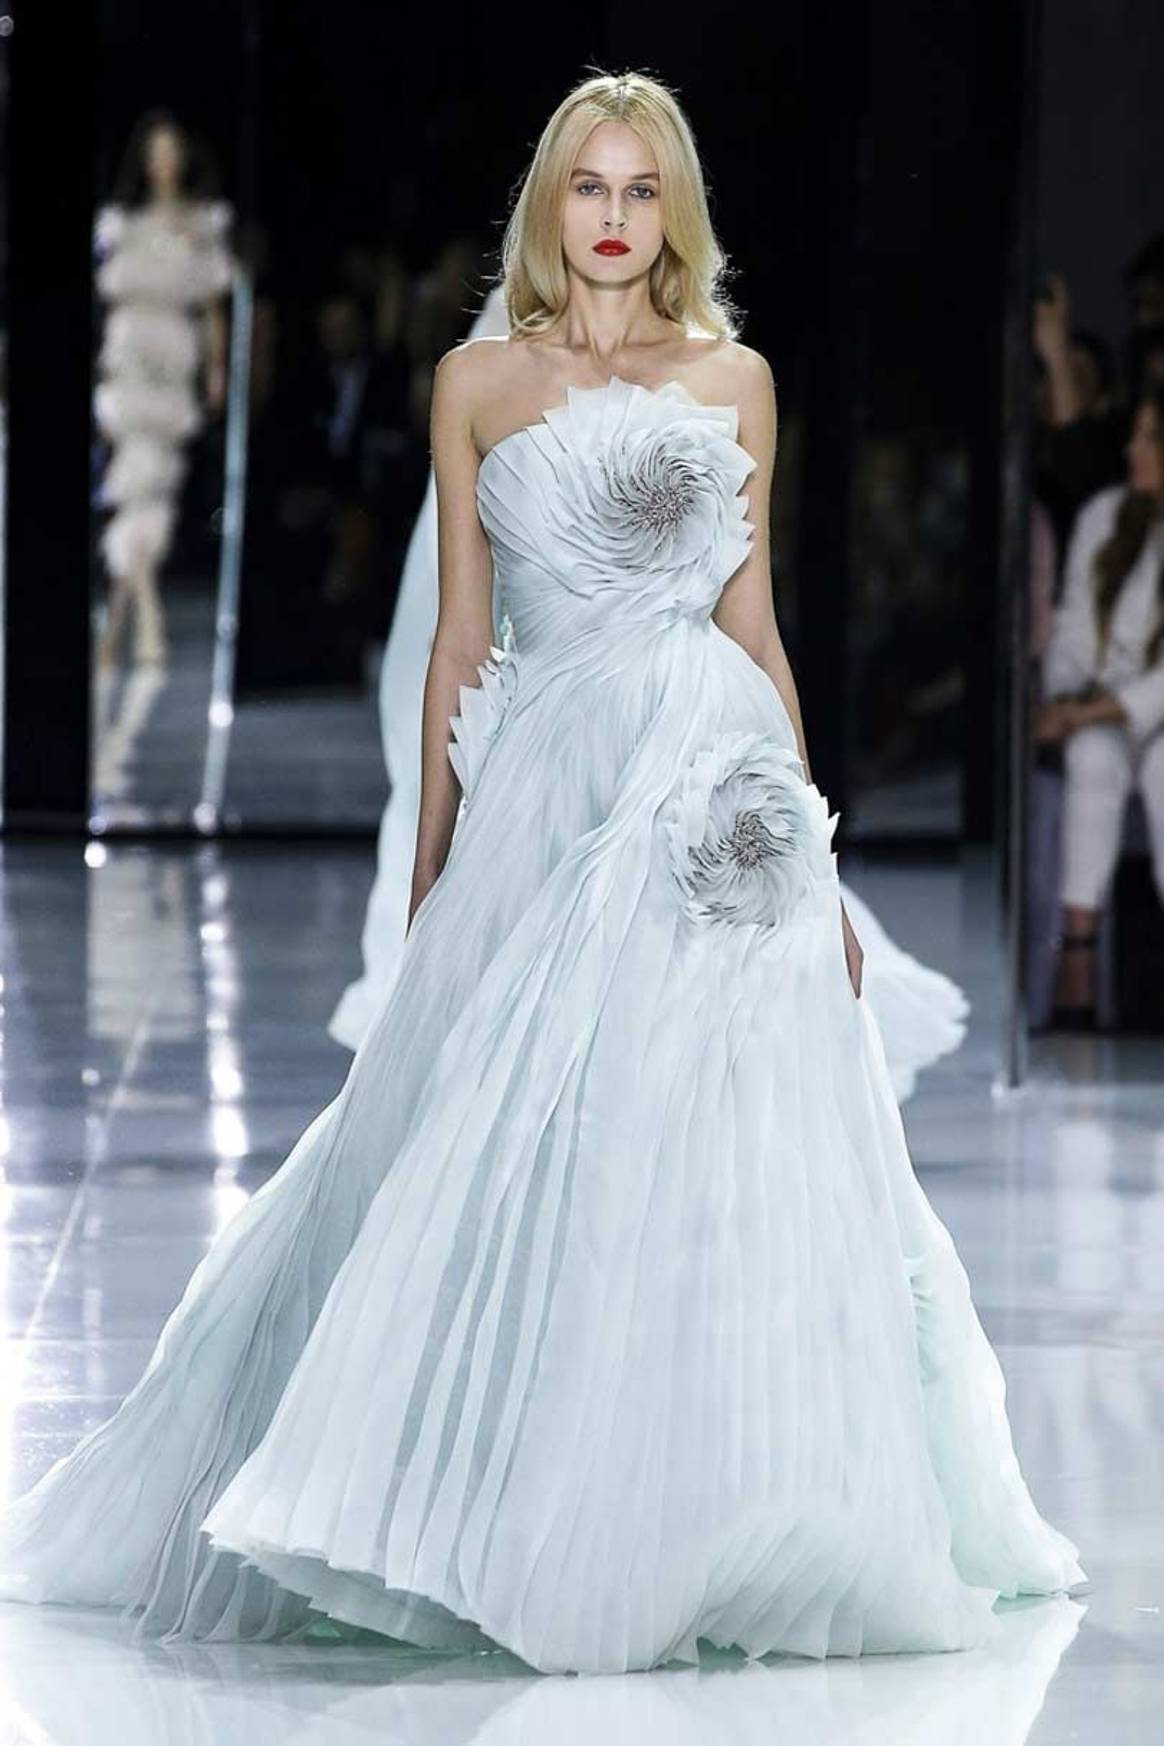 Dit is het haute couturehuis dat volgens Daily Mail de bruidsjurk van Meghan Markle ontwerpt